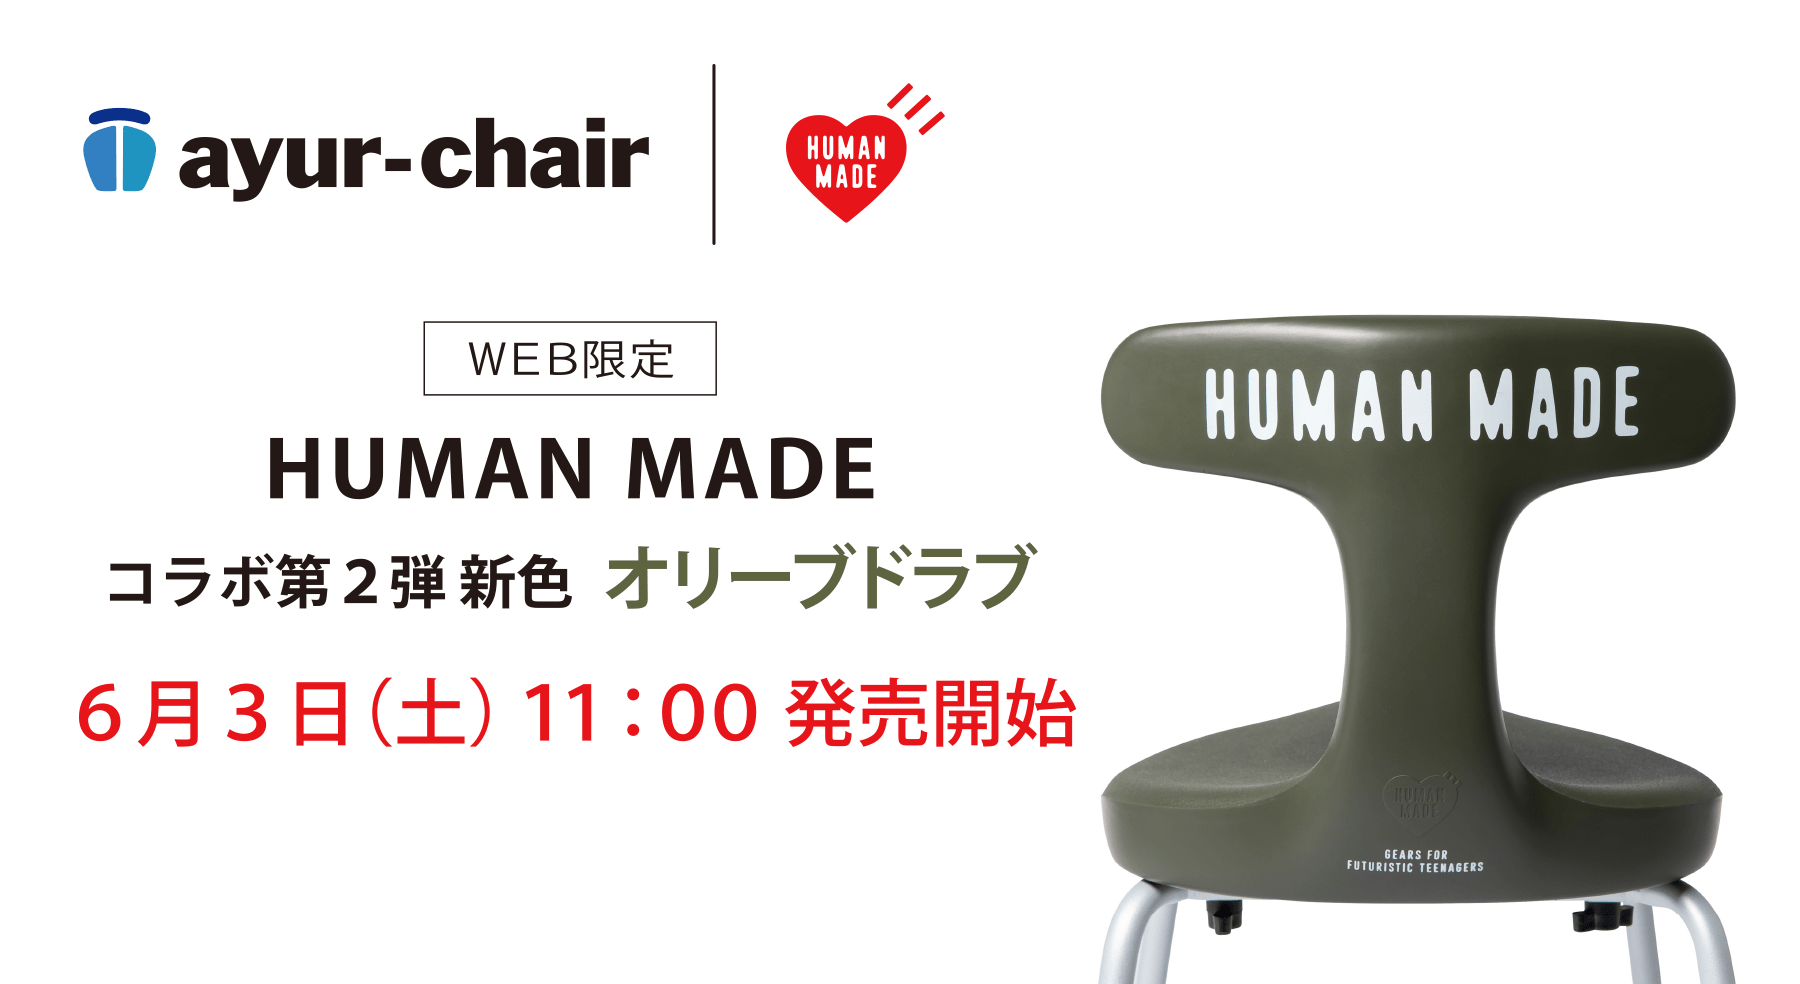 アーユル・チェアー × HUMAN MADE 特別コラボレーションモデル